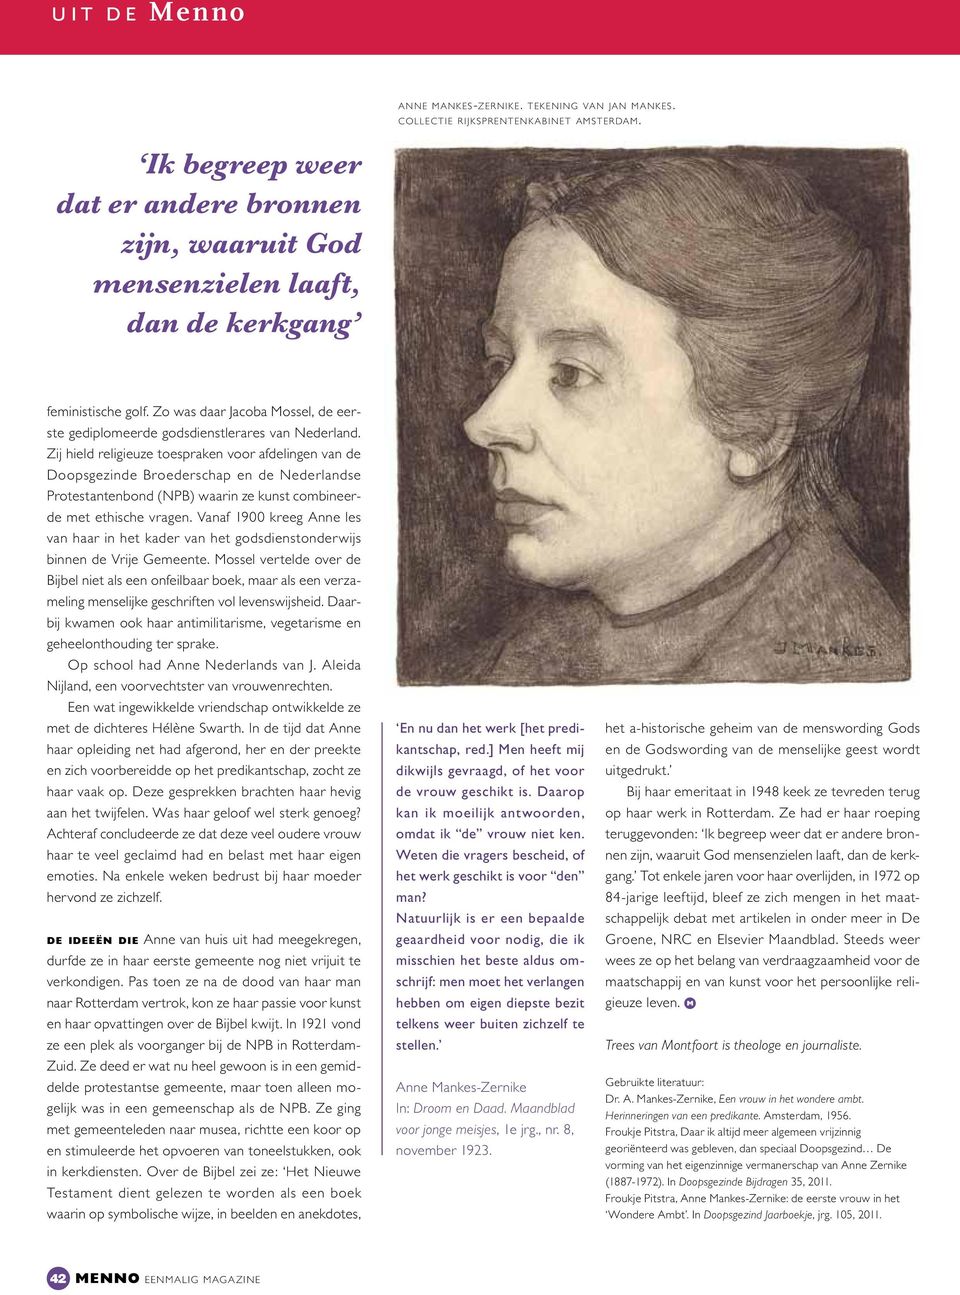 Zij hield religieuze toespraken voor afdelingen van de Doopsgezinde Broederschap en de Nederlandse Protestantenbond (NPB) waarin ze kunst combineerde met ethische vragen.